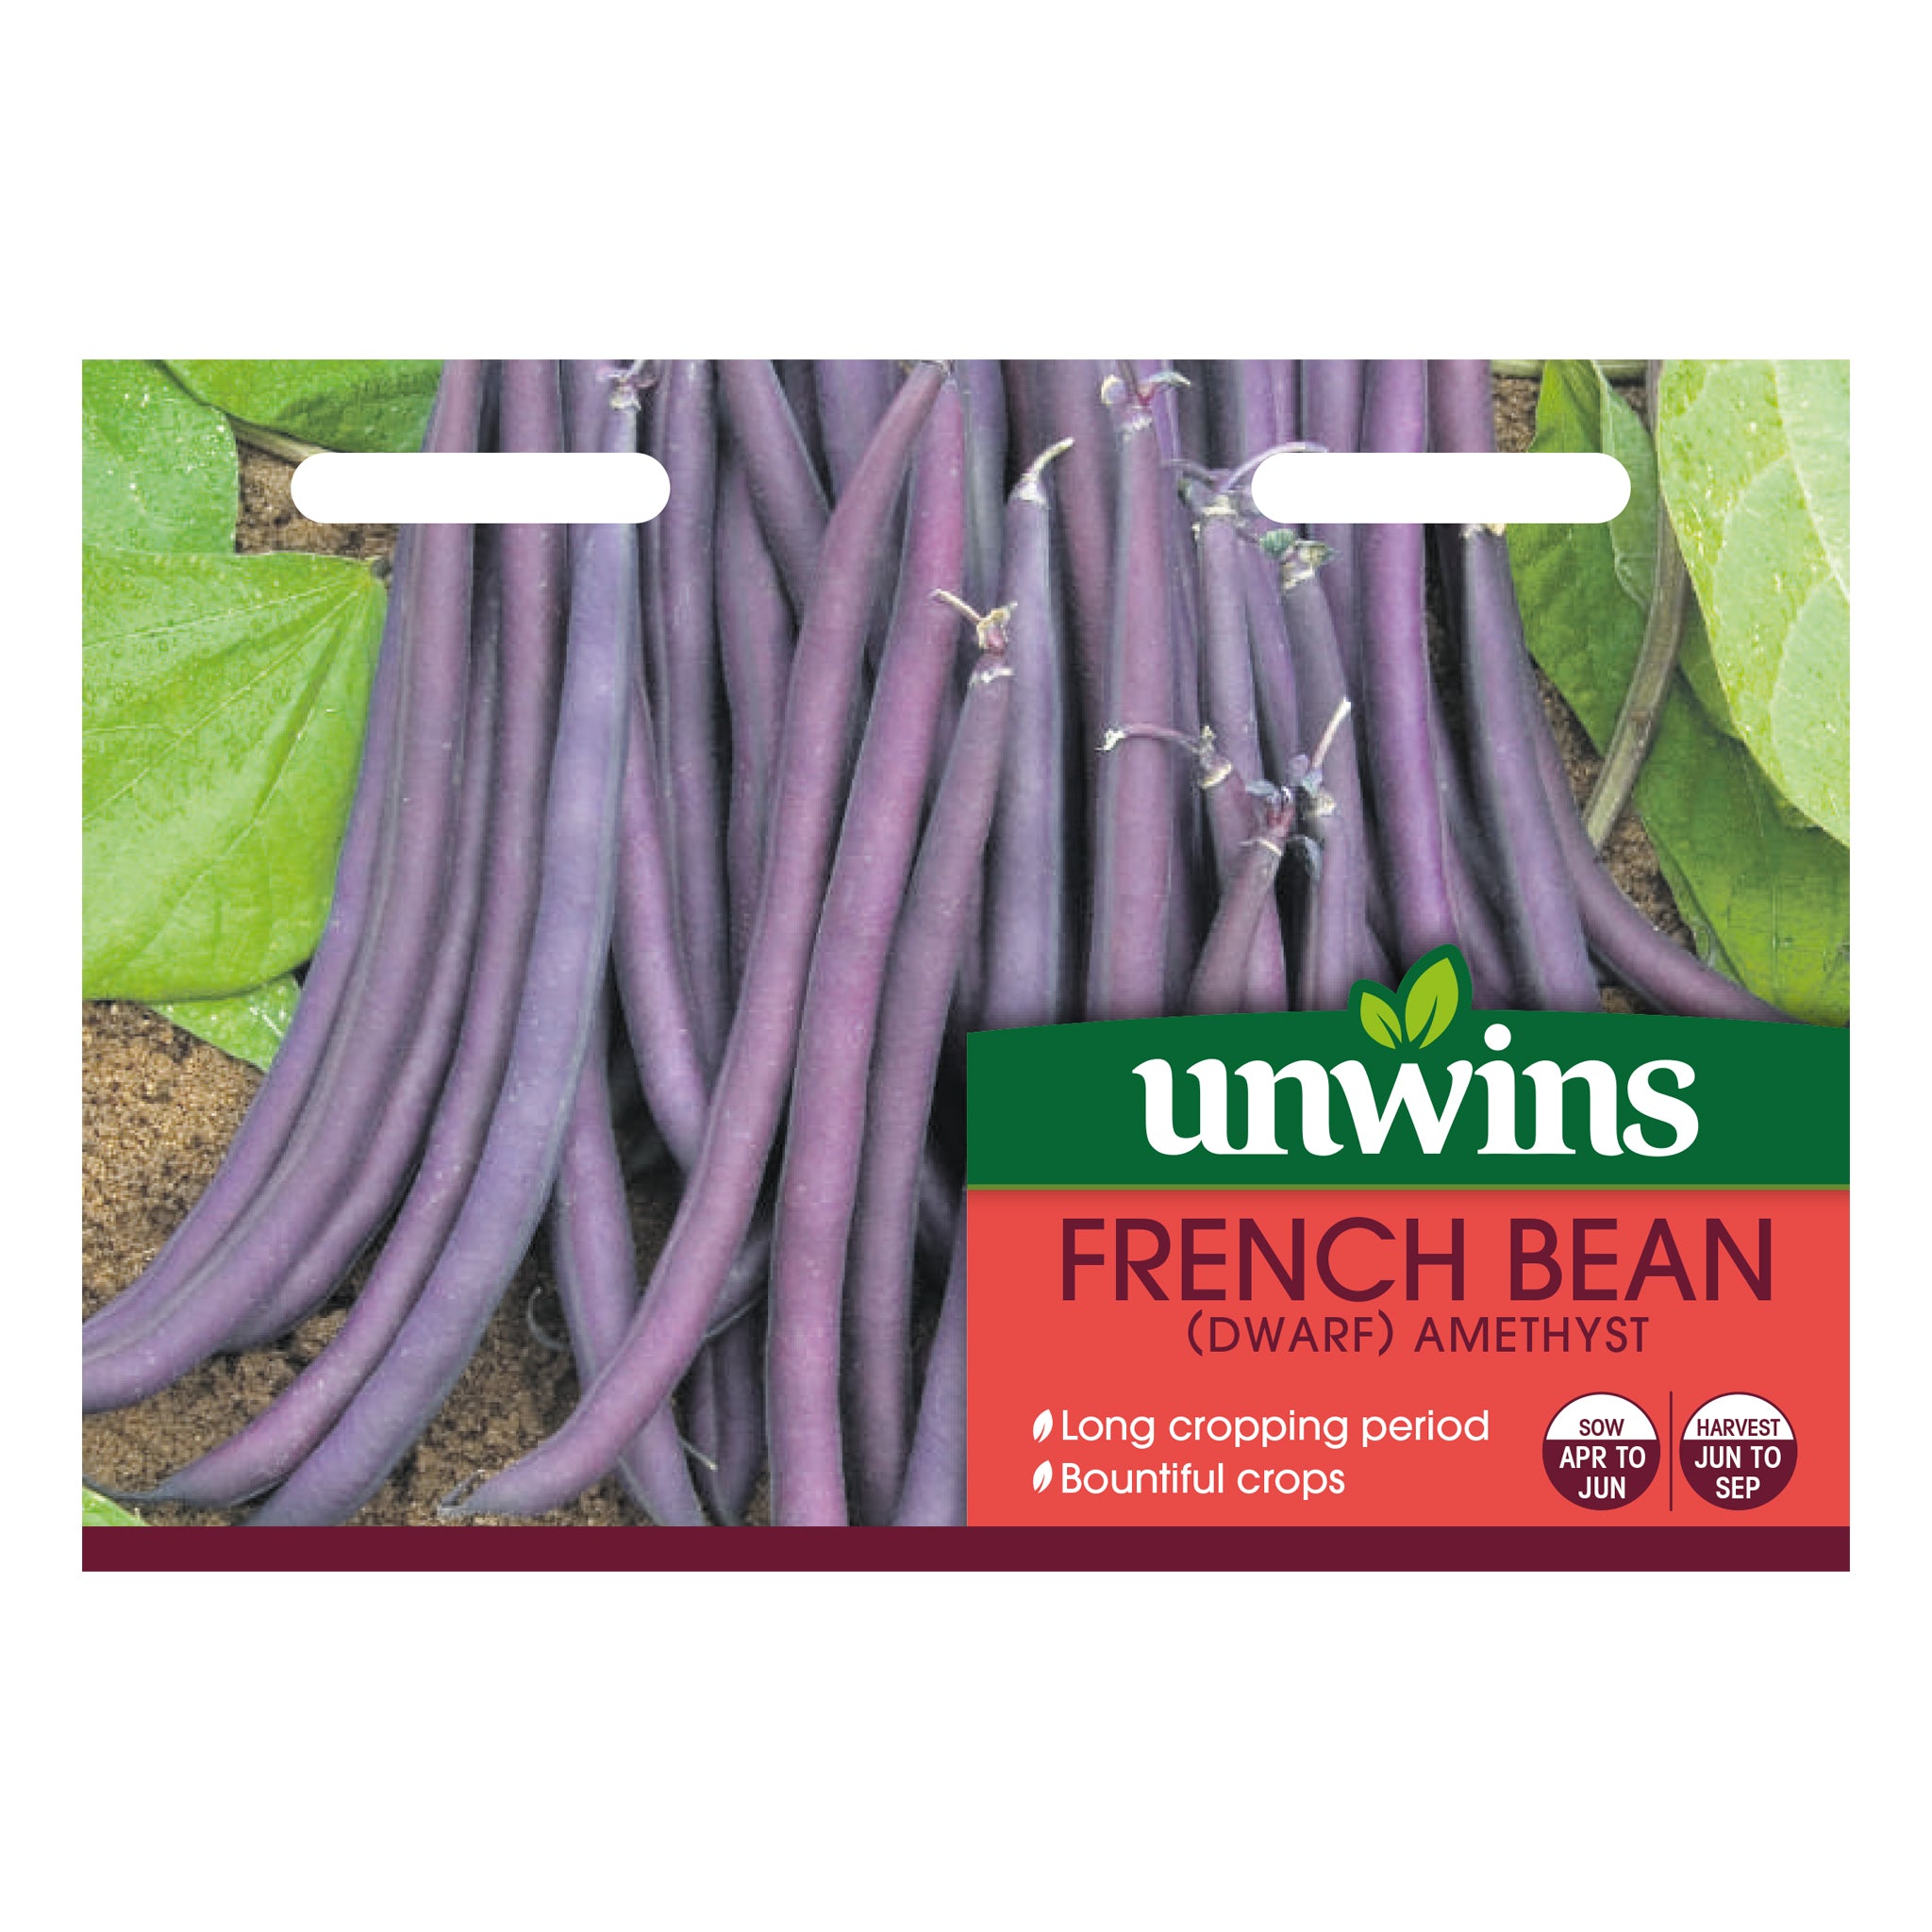 Unwins Dwarf French Bean Amethyst Seeds